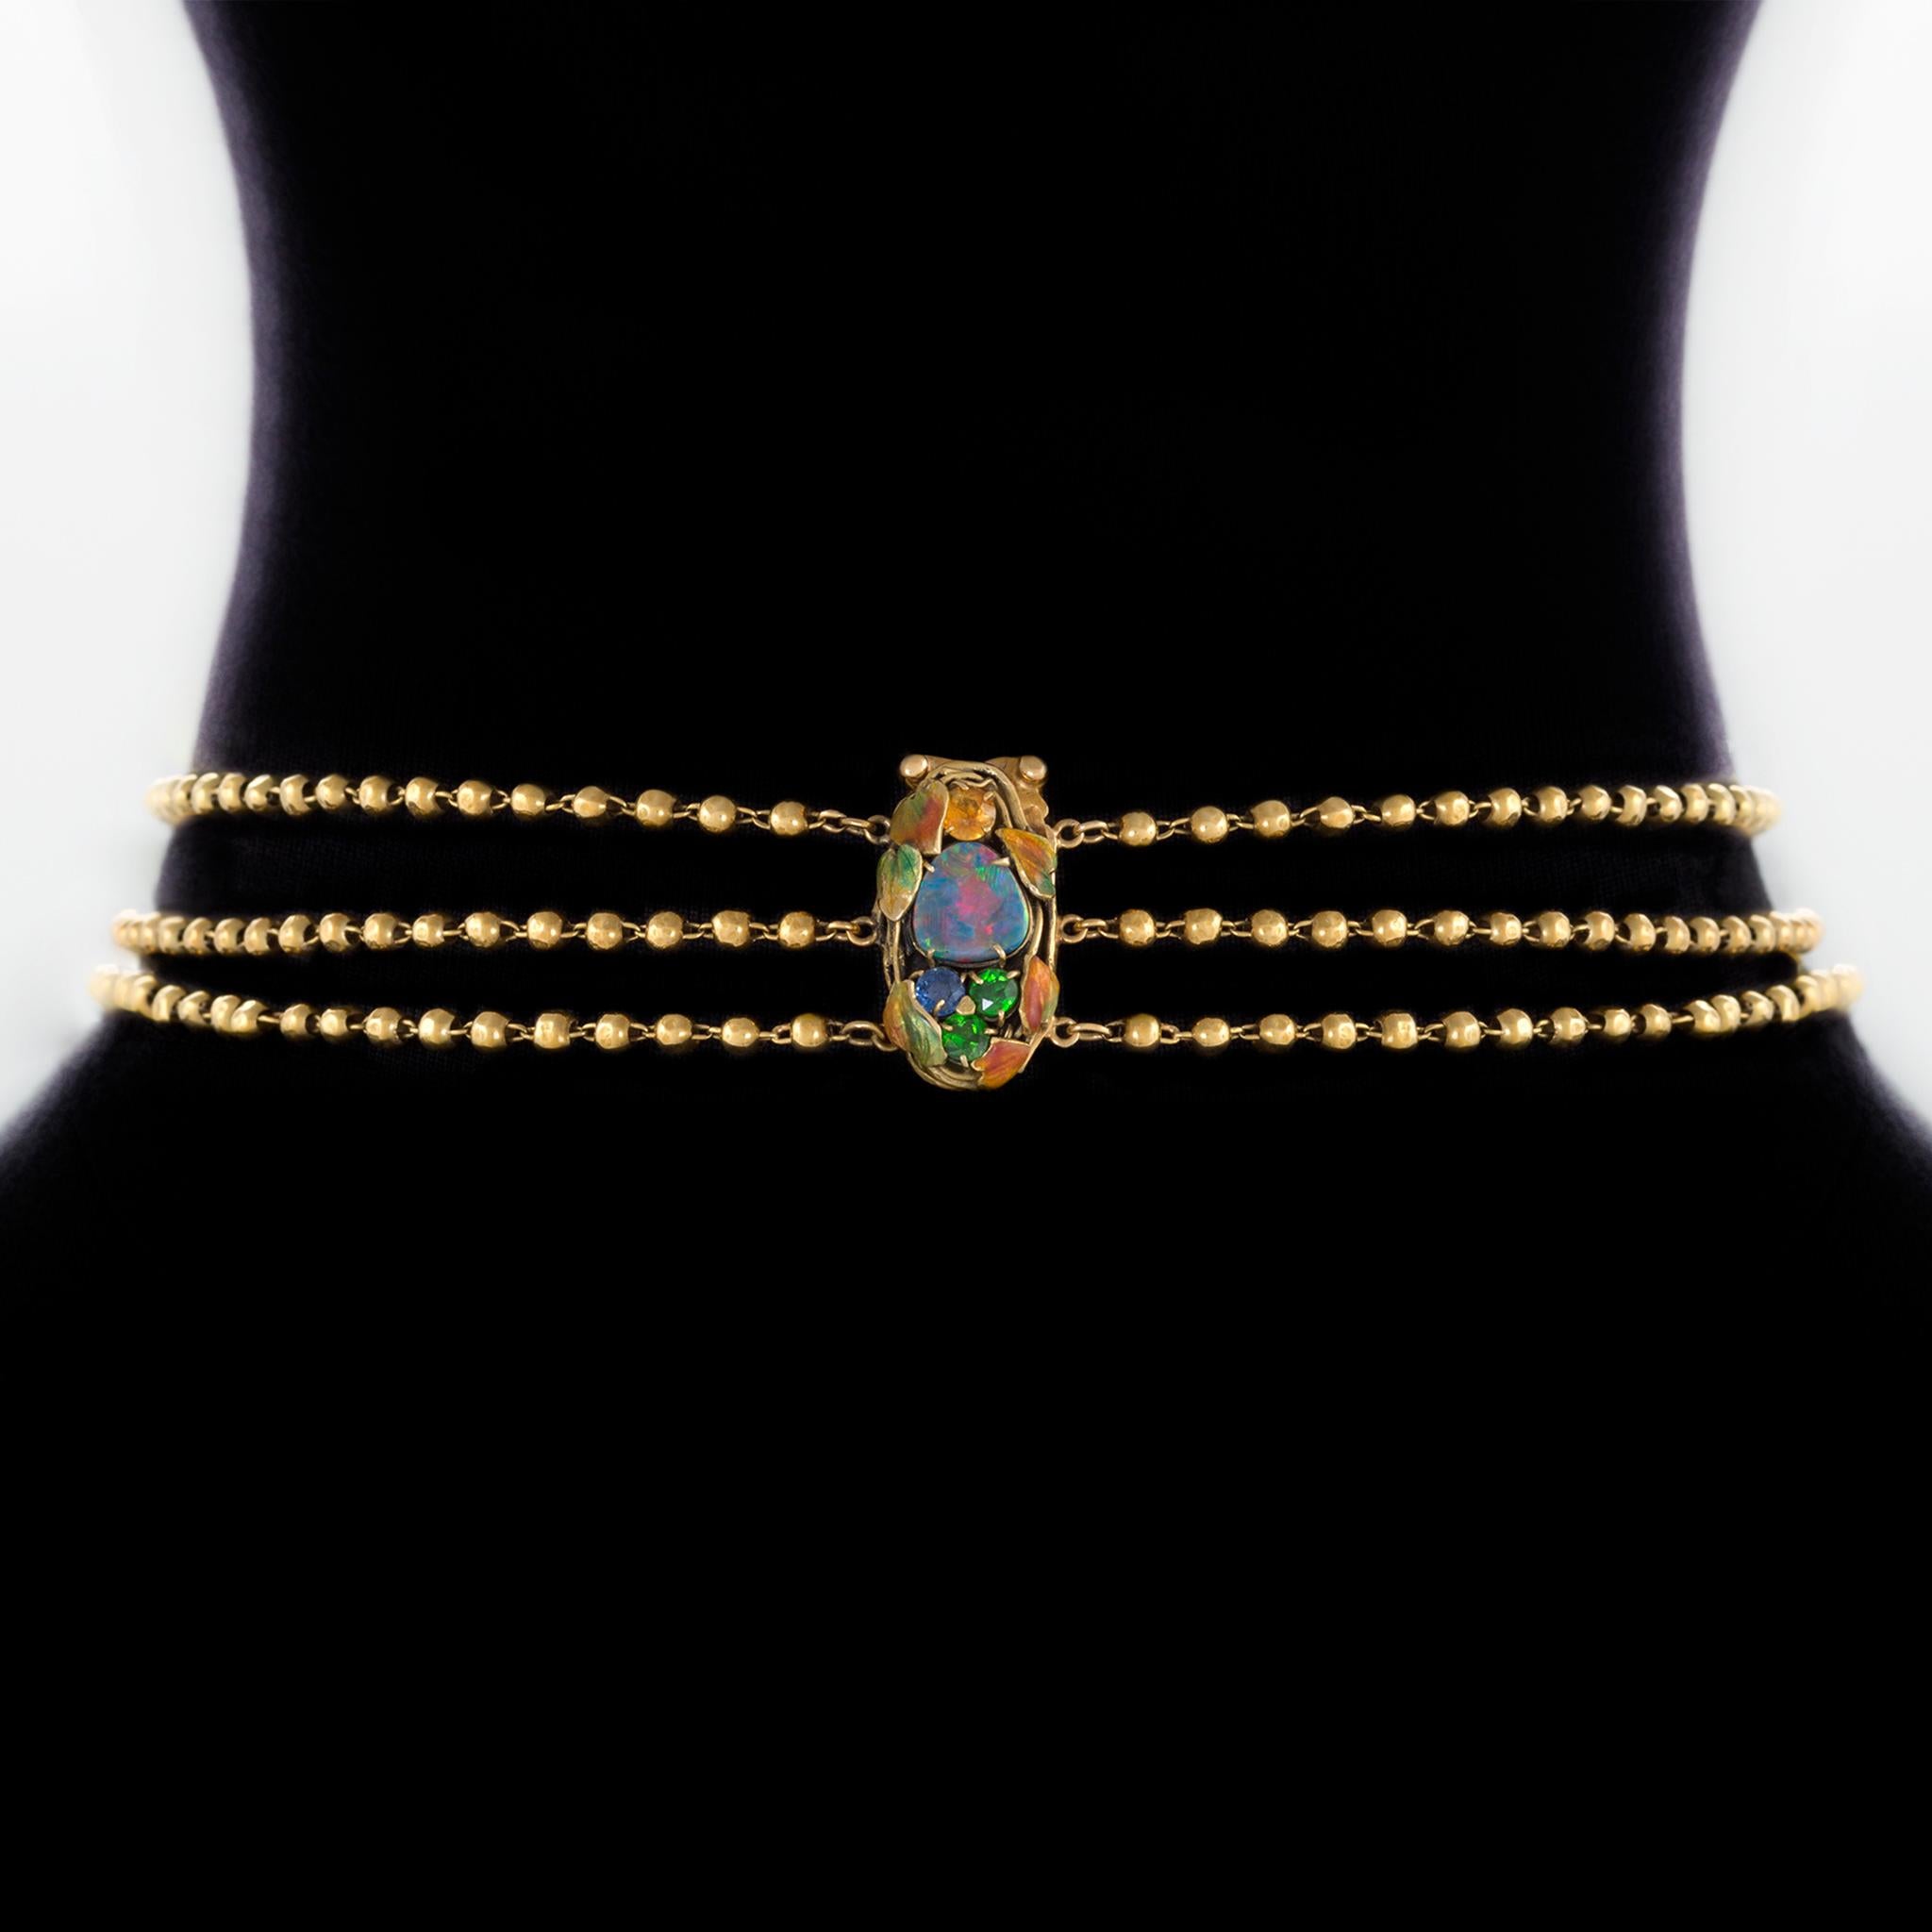 Art Nouveau Louis Comfort Tiffany Black Opal and Enamel Necklace and Bracelet Set